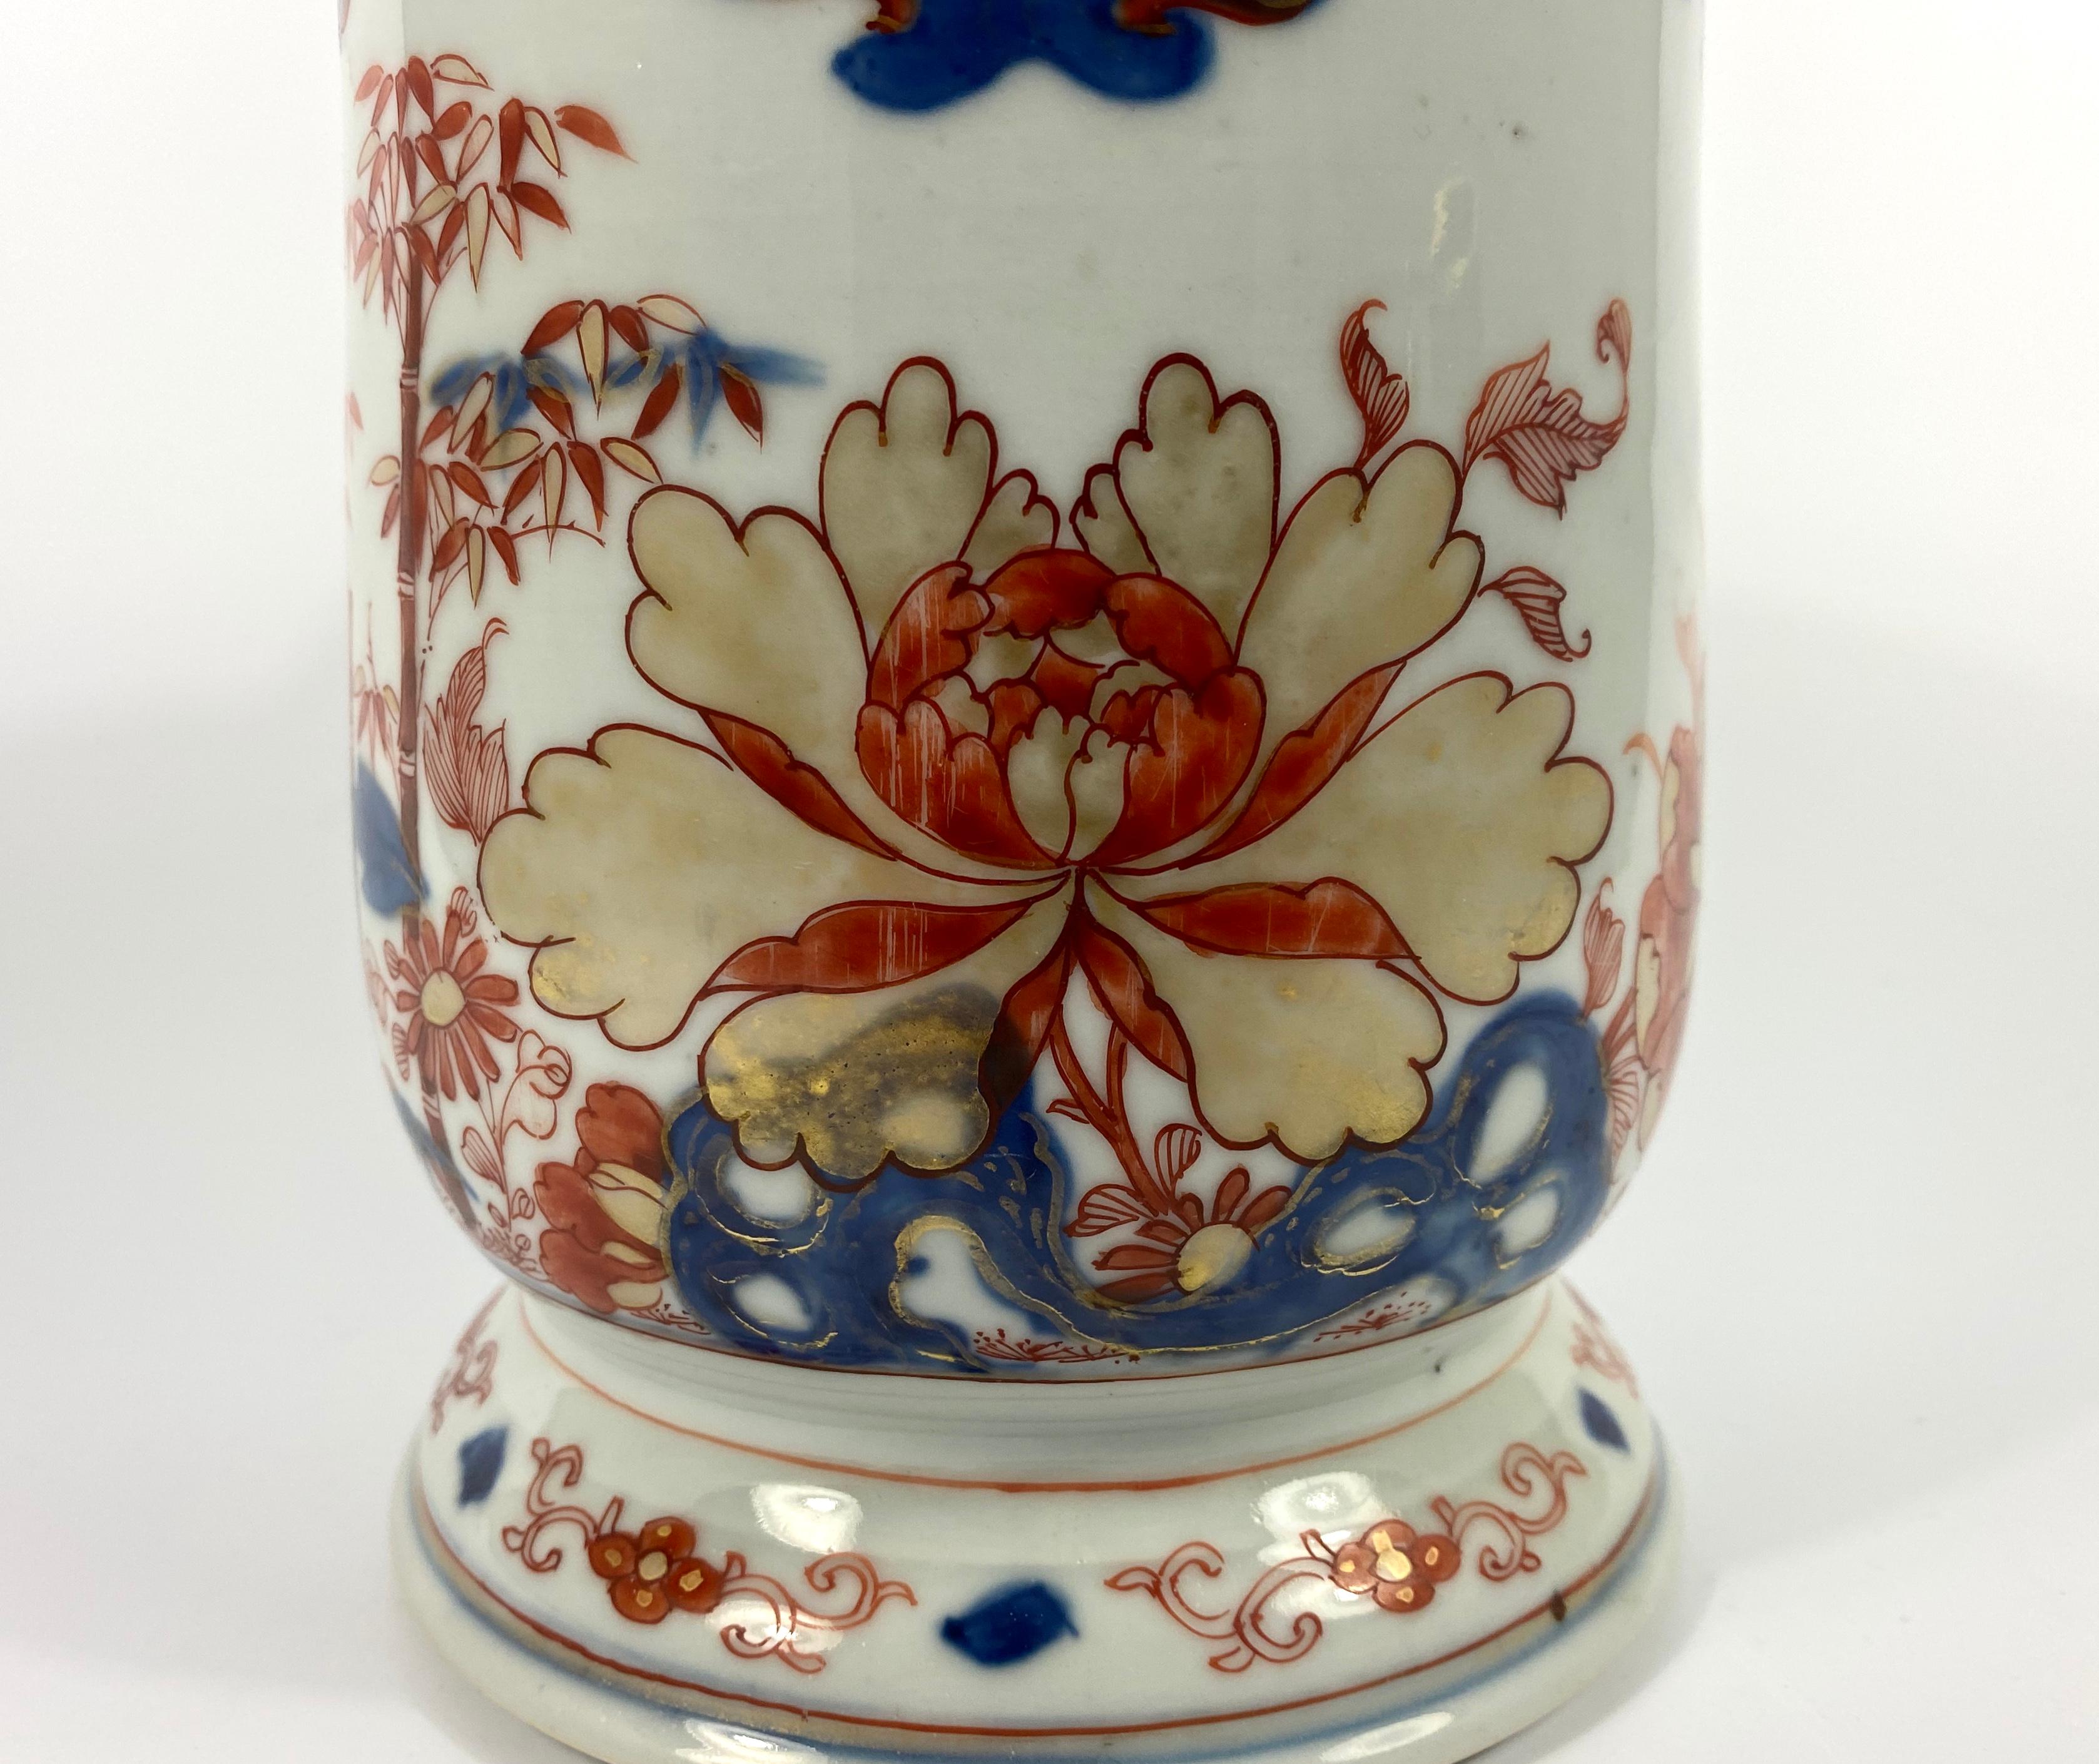 Fired Chinese Imari Porcelain Mug, circa 1720, Kangxi Period